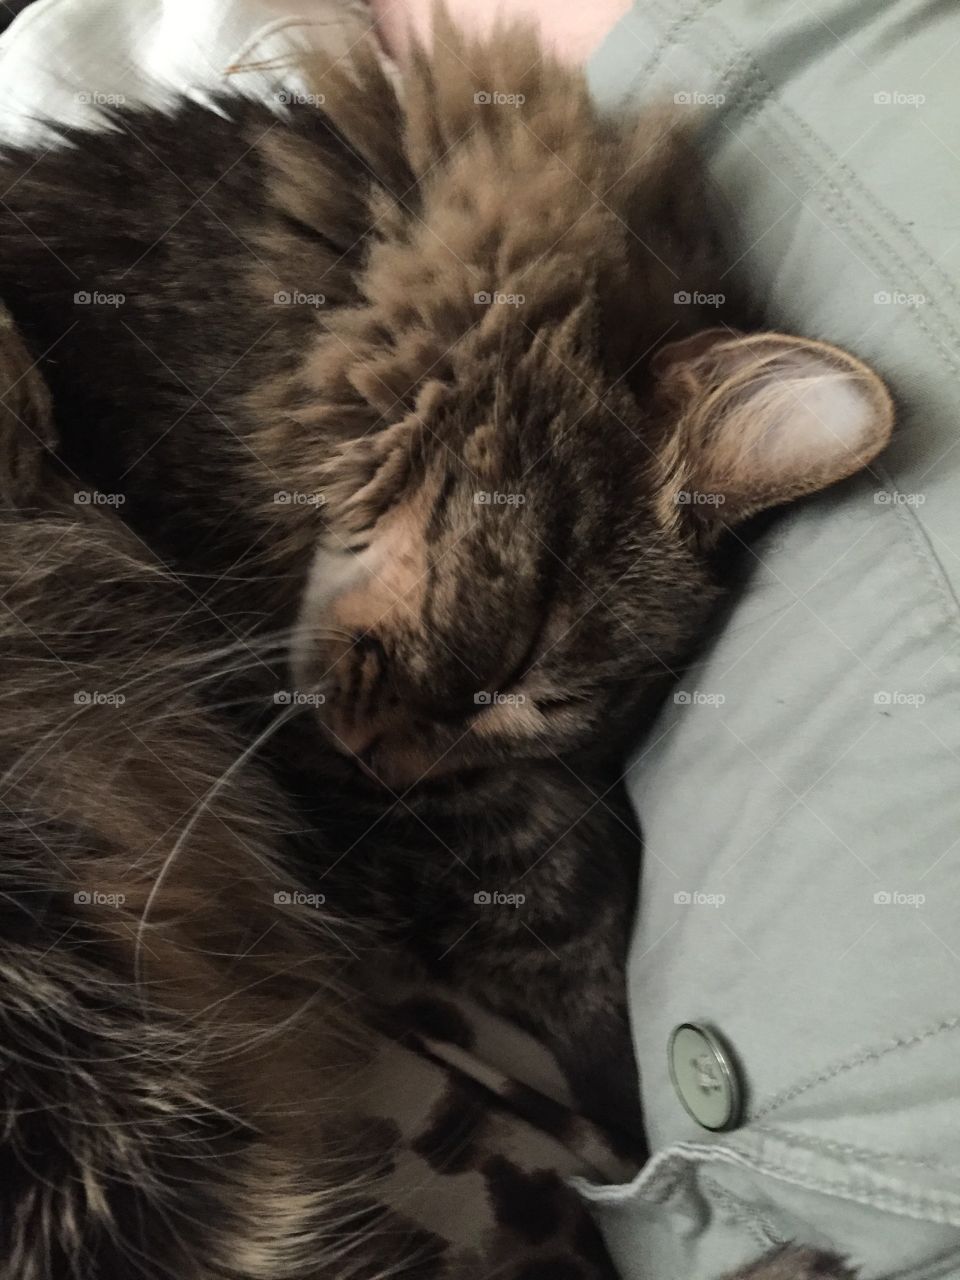 Cat, Sleep, Cute, Kitten, Portrait